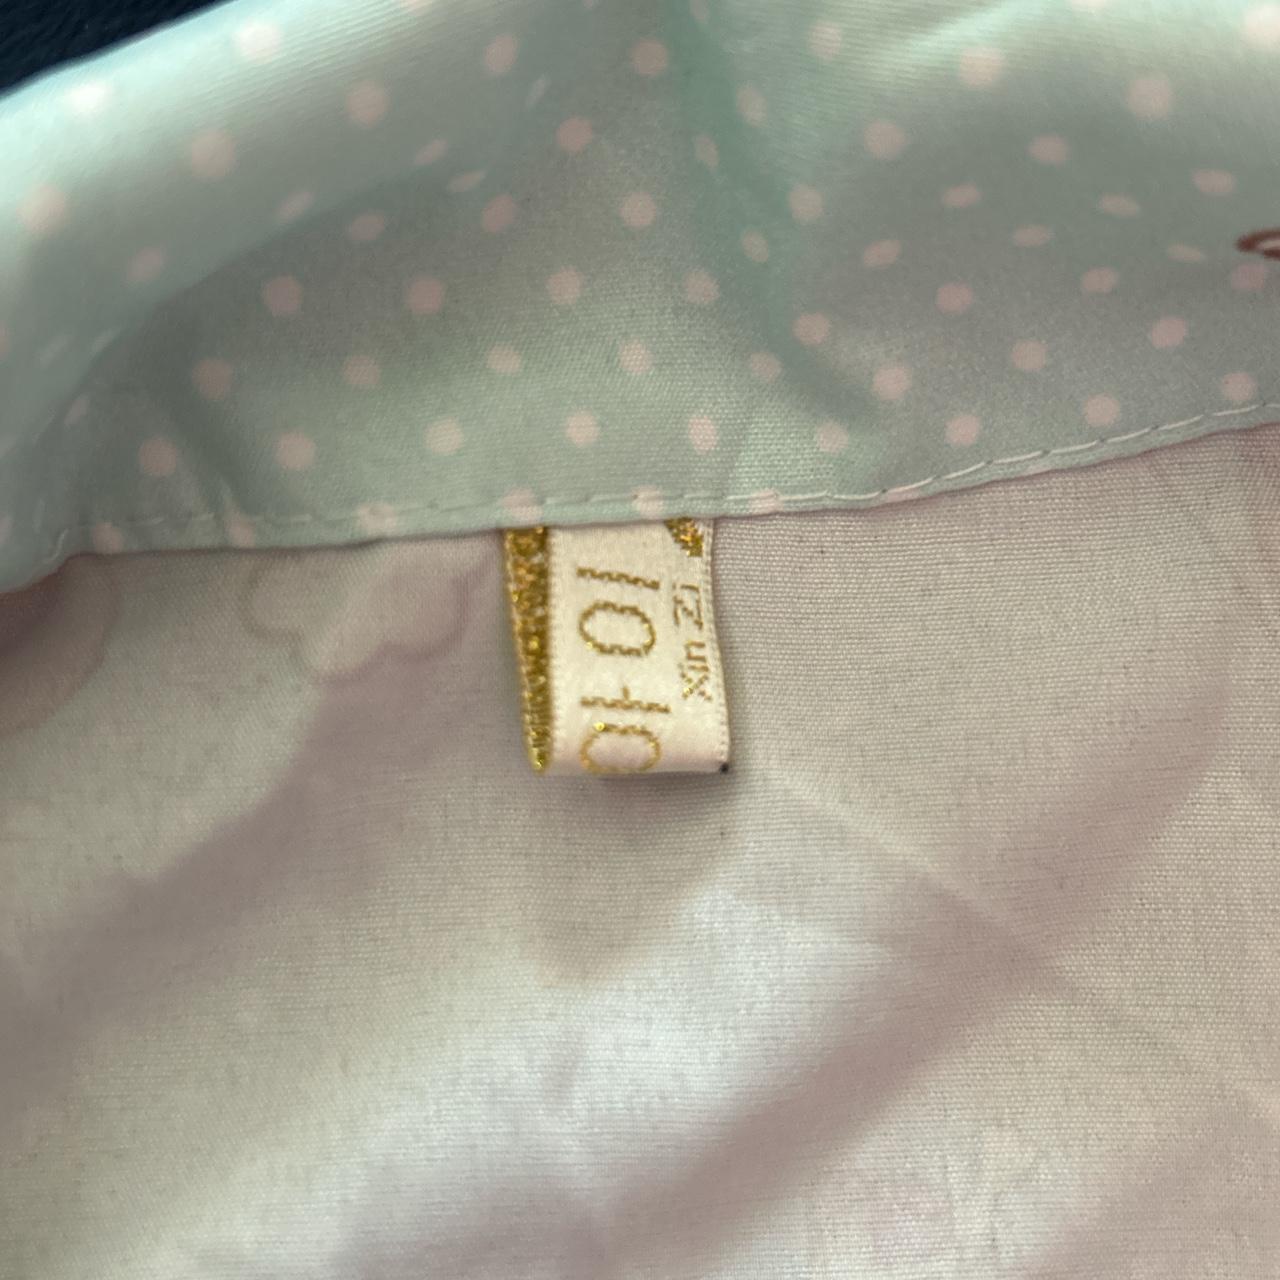 Handmade My Melody Sanrio pajama set Top and shorts... - Depop